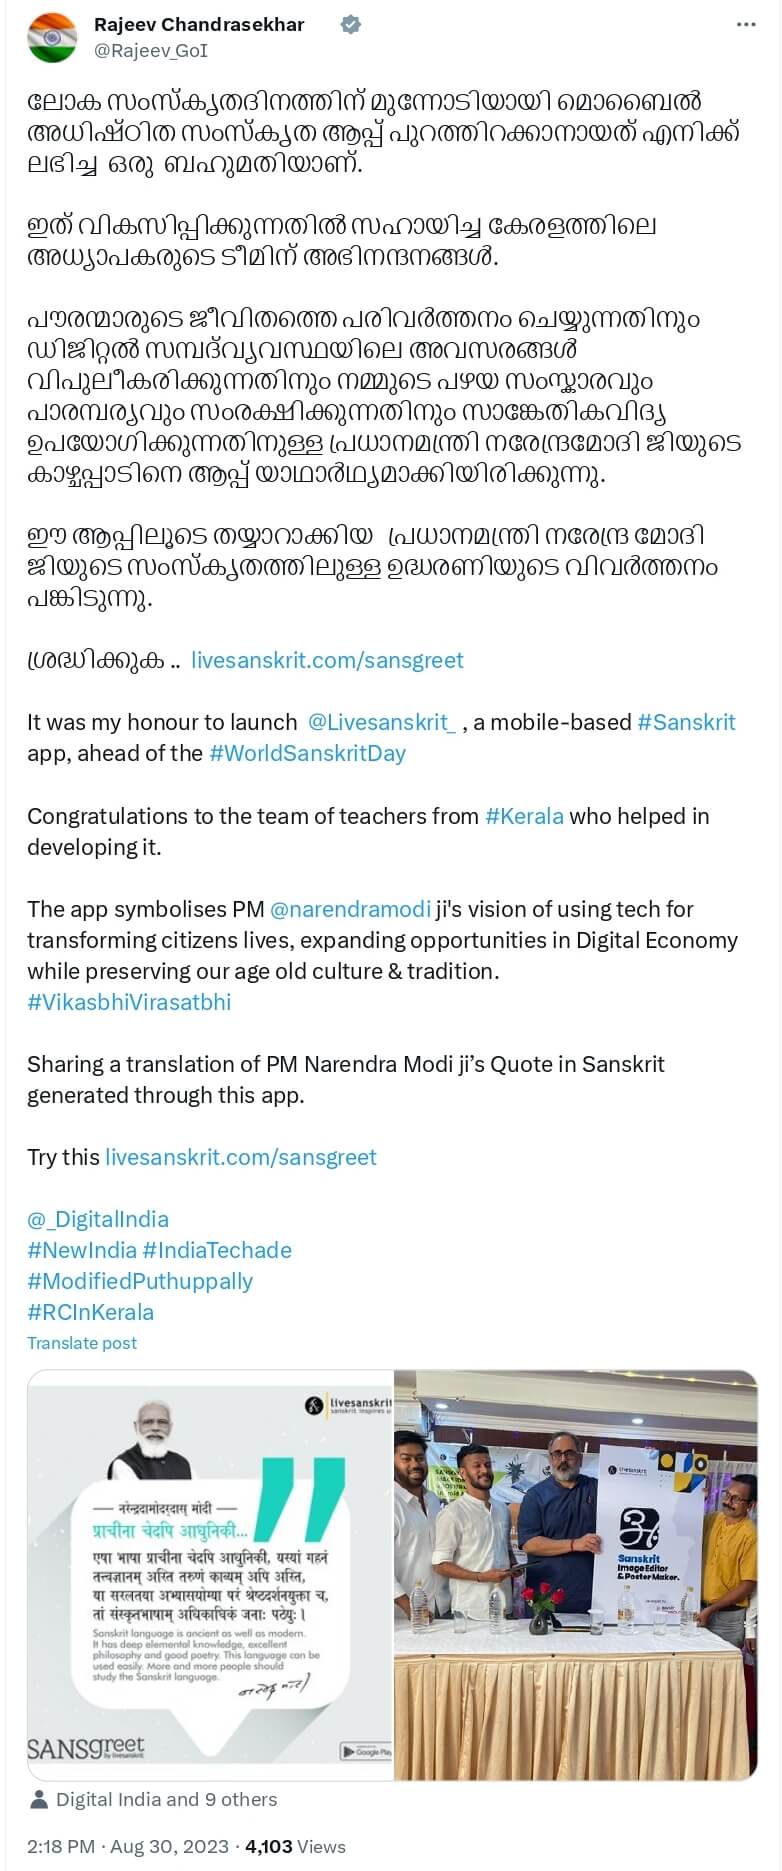 Live Sanskrit image-text editor app | Twitter | Rajeev Chandrasekhar | Union Minister of State